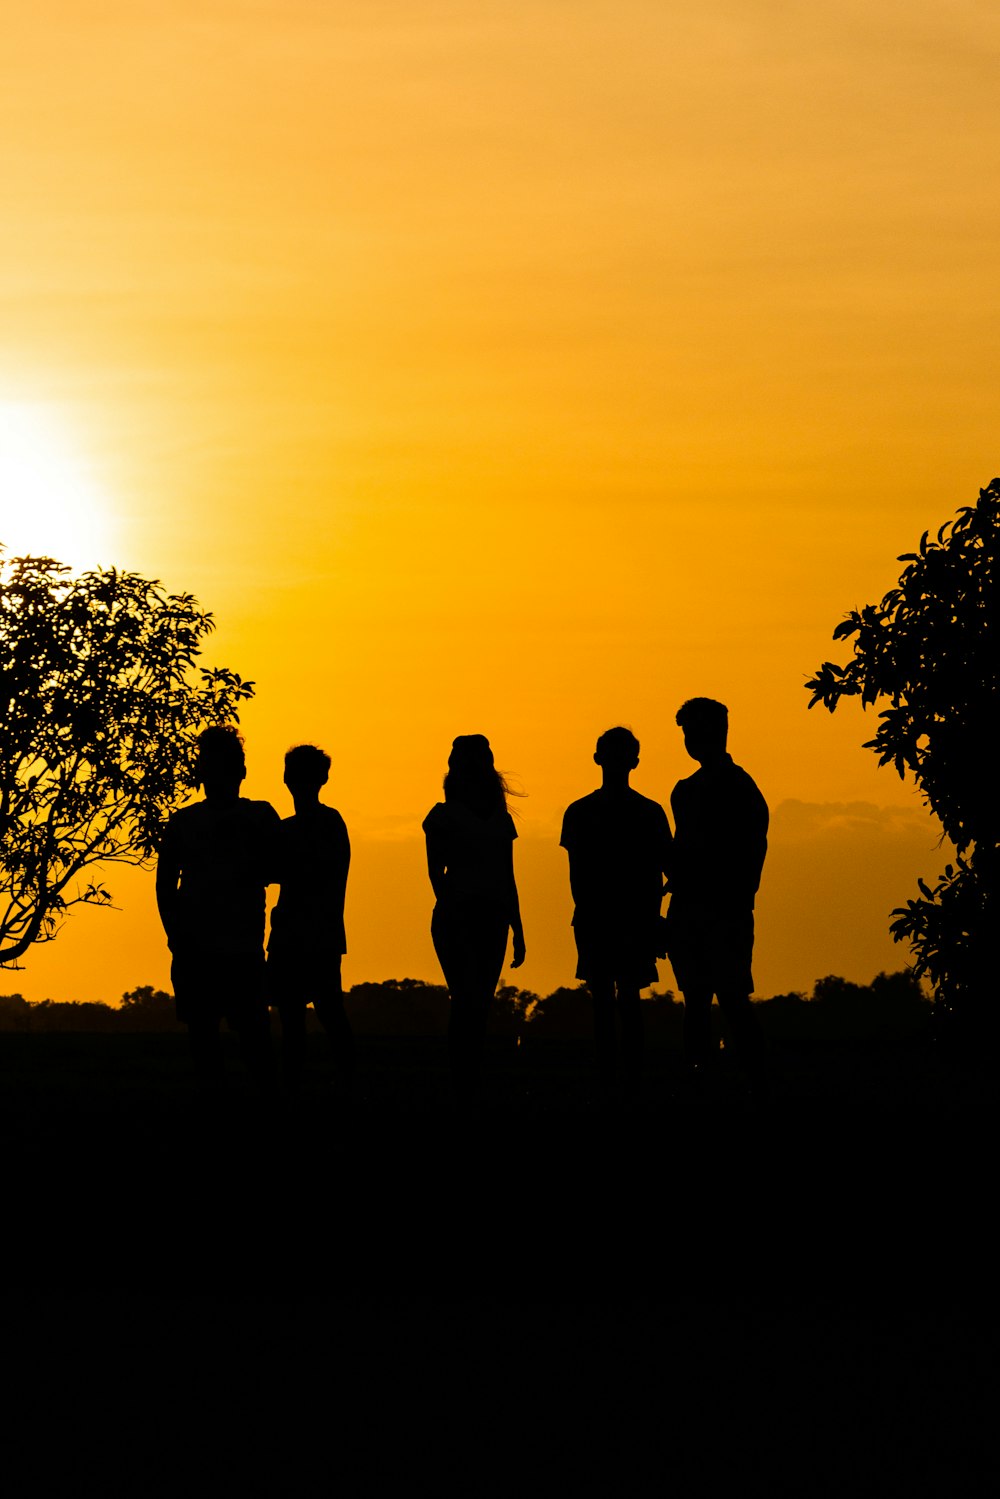 Silueta de 3 hombres de pie cerca del árbol durante la puesta del sol